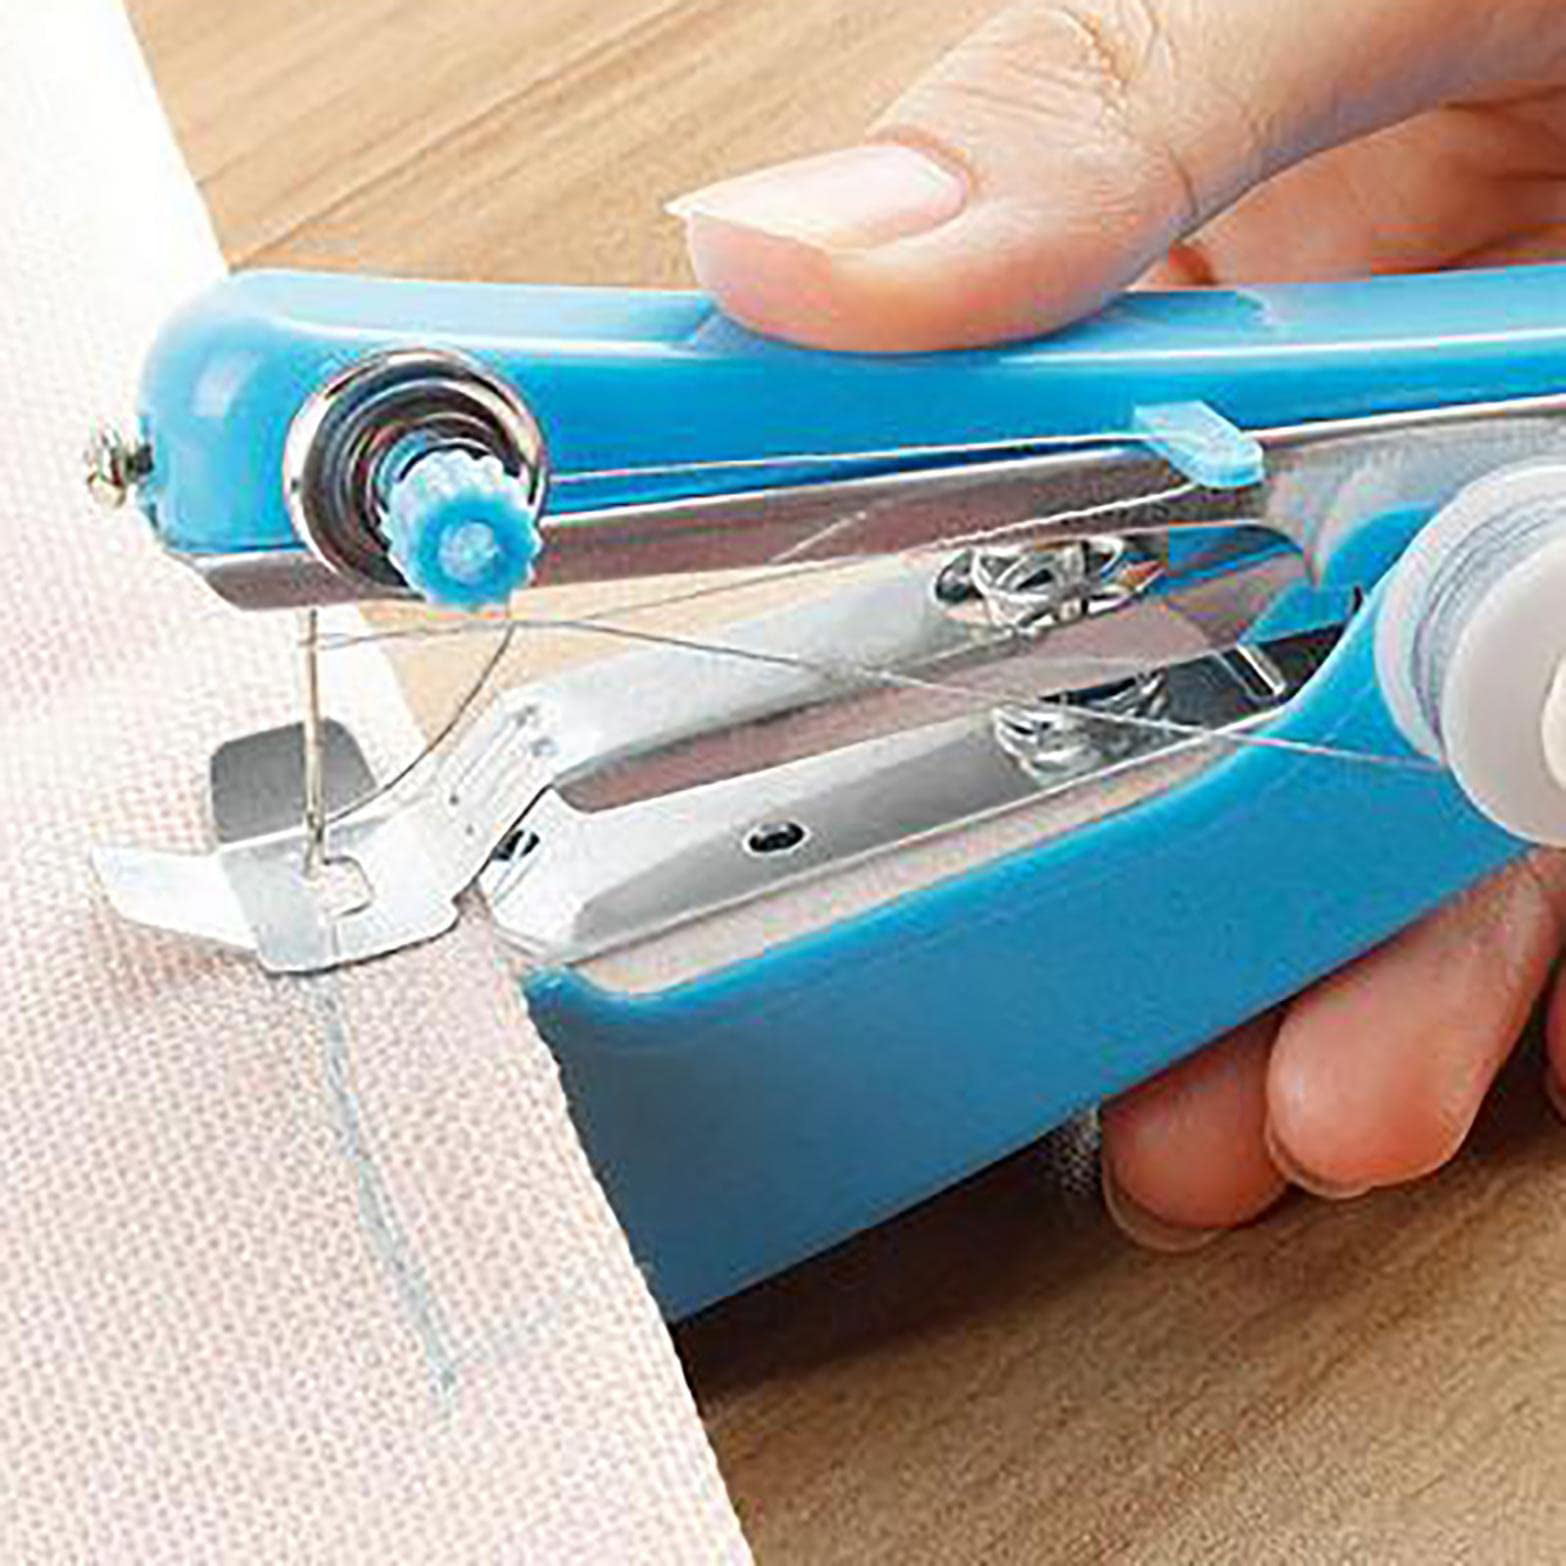 MiniSewer - Máquina de coser de mano, mini máquina de coser de mano, mini  alcantarilla, máquina de coser a mano, máquina de coser portátil para uso